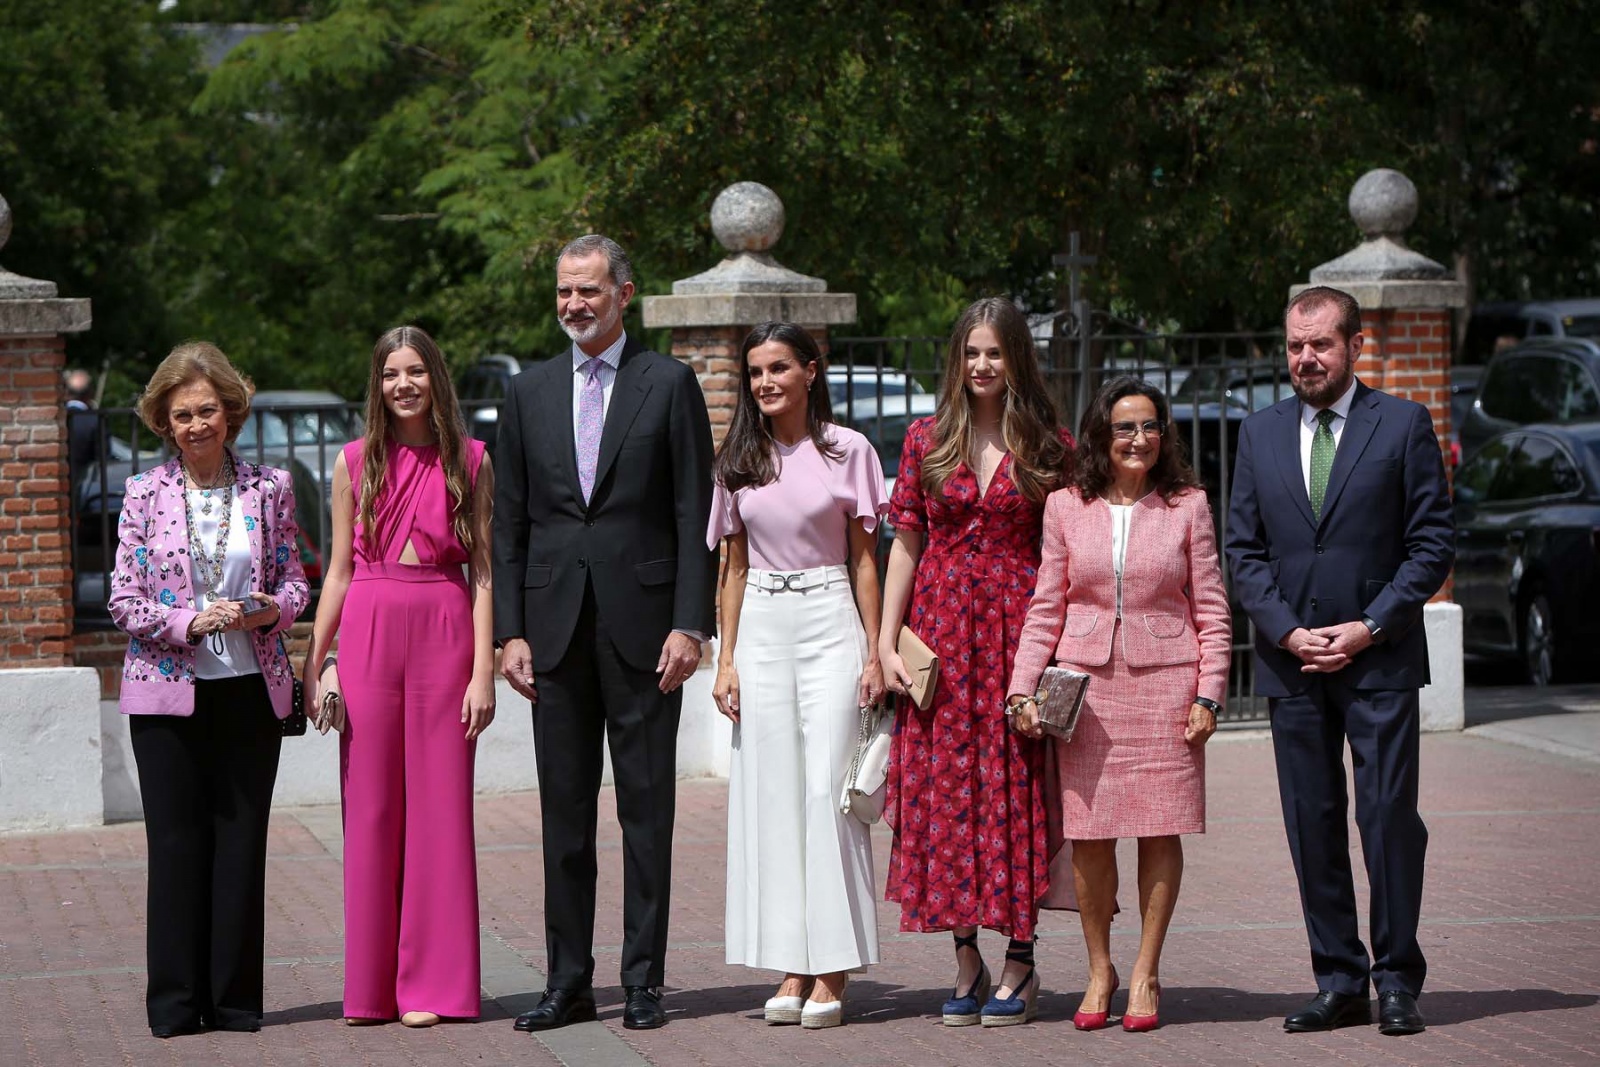 A Infanta Sofía de Espanha recebeu o Sacramento do Crisma rodeada pela família. Na foto, a rainha Sofía, a infanta Sofía, o rei Felipe VI, a rainha Letizia, a princesa Leonor, Paloma Rocasolano e Jesus Ortiz